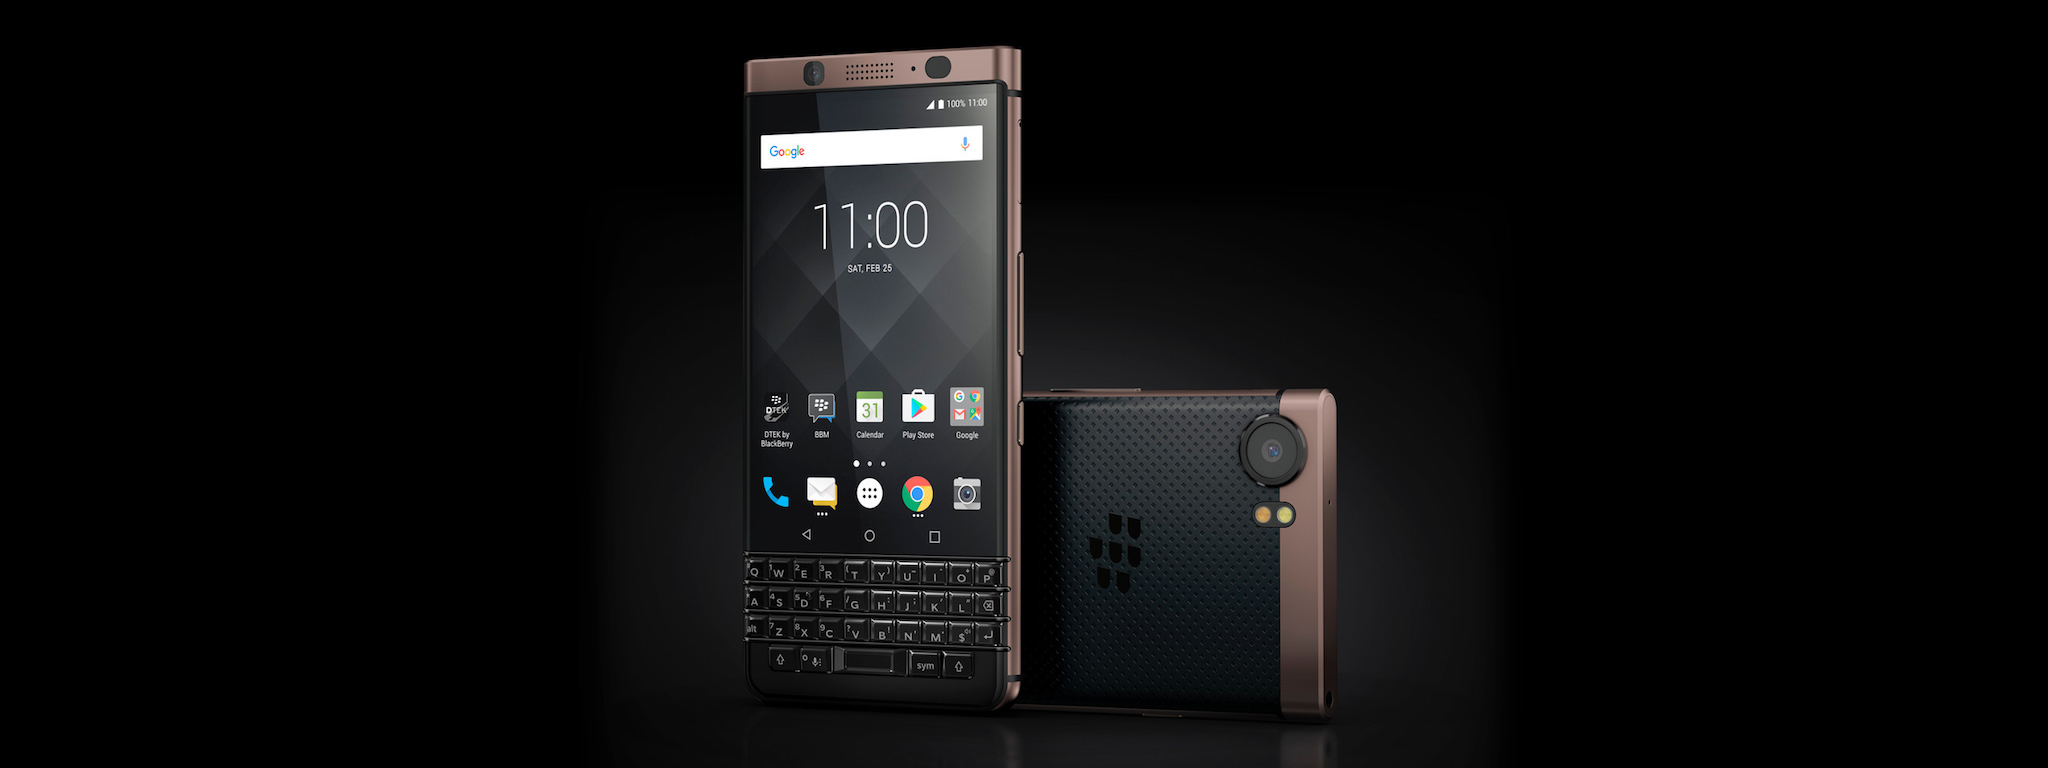 [CES18] BlackBerry giới thiệu KEYone màu đồng, cấu hình giống bản màu đen